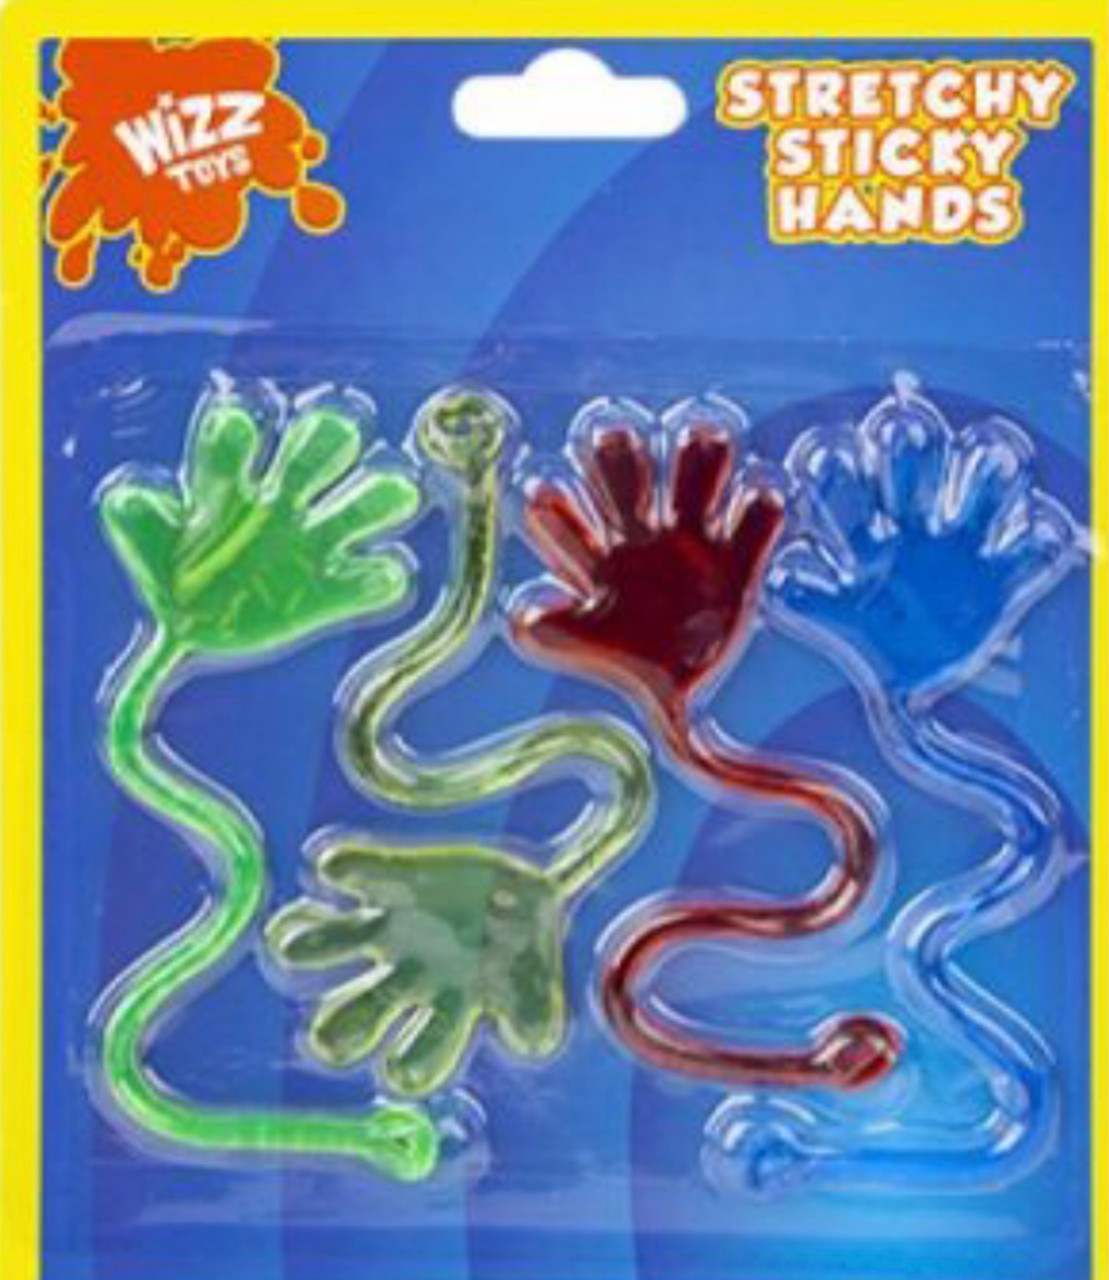 Stretchy Sticky Hands